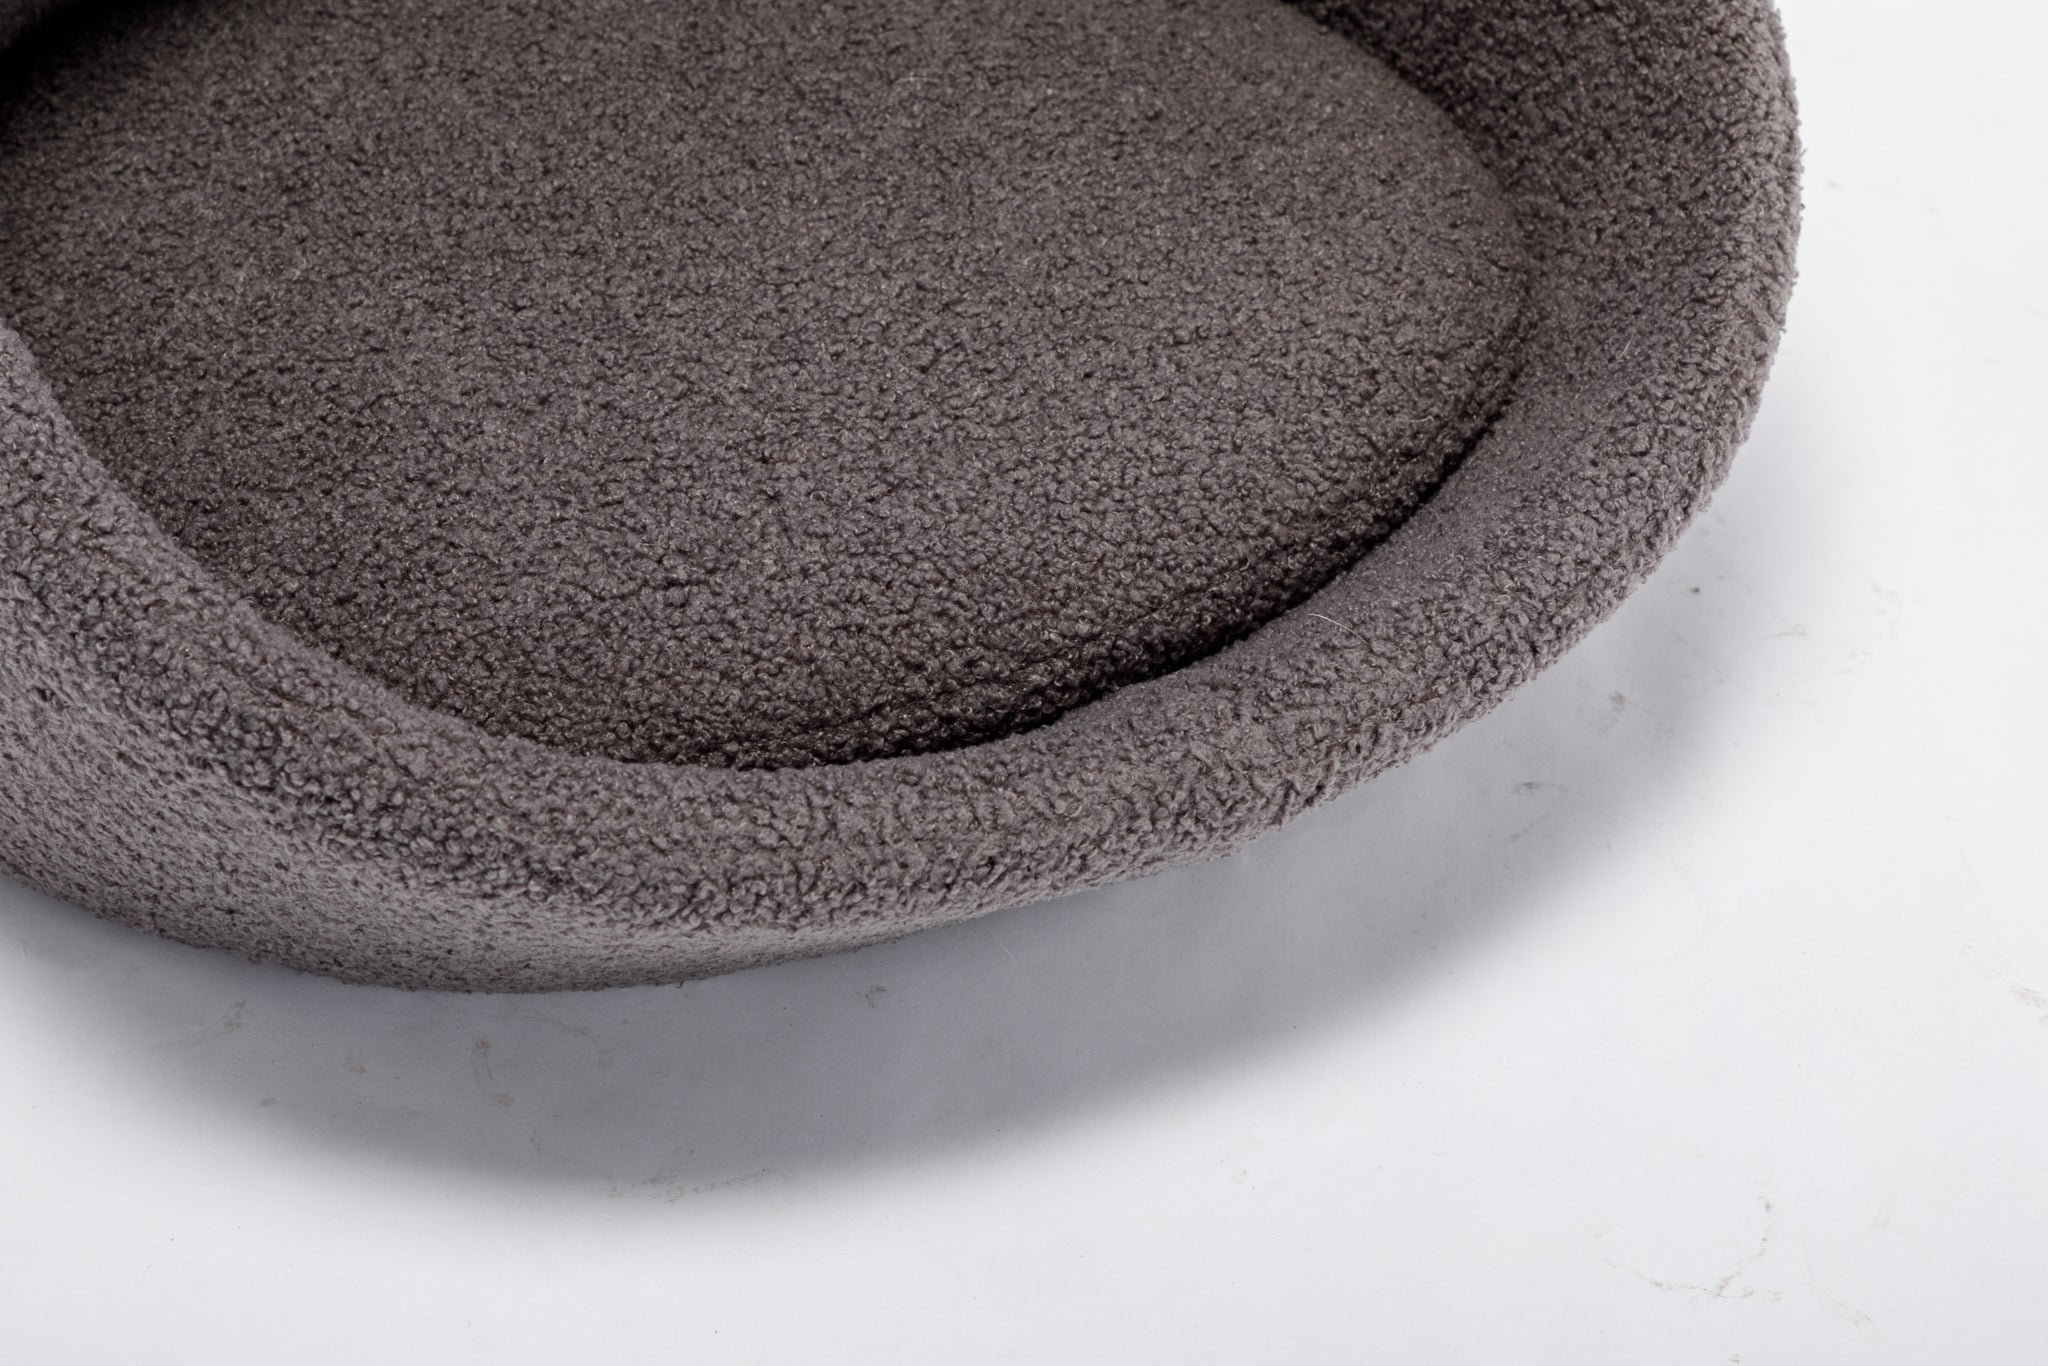 PANGPANG Cat Bed Pet Sofa With Solid Wood frame grey-memory foam-american design-cat-small (11 -